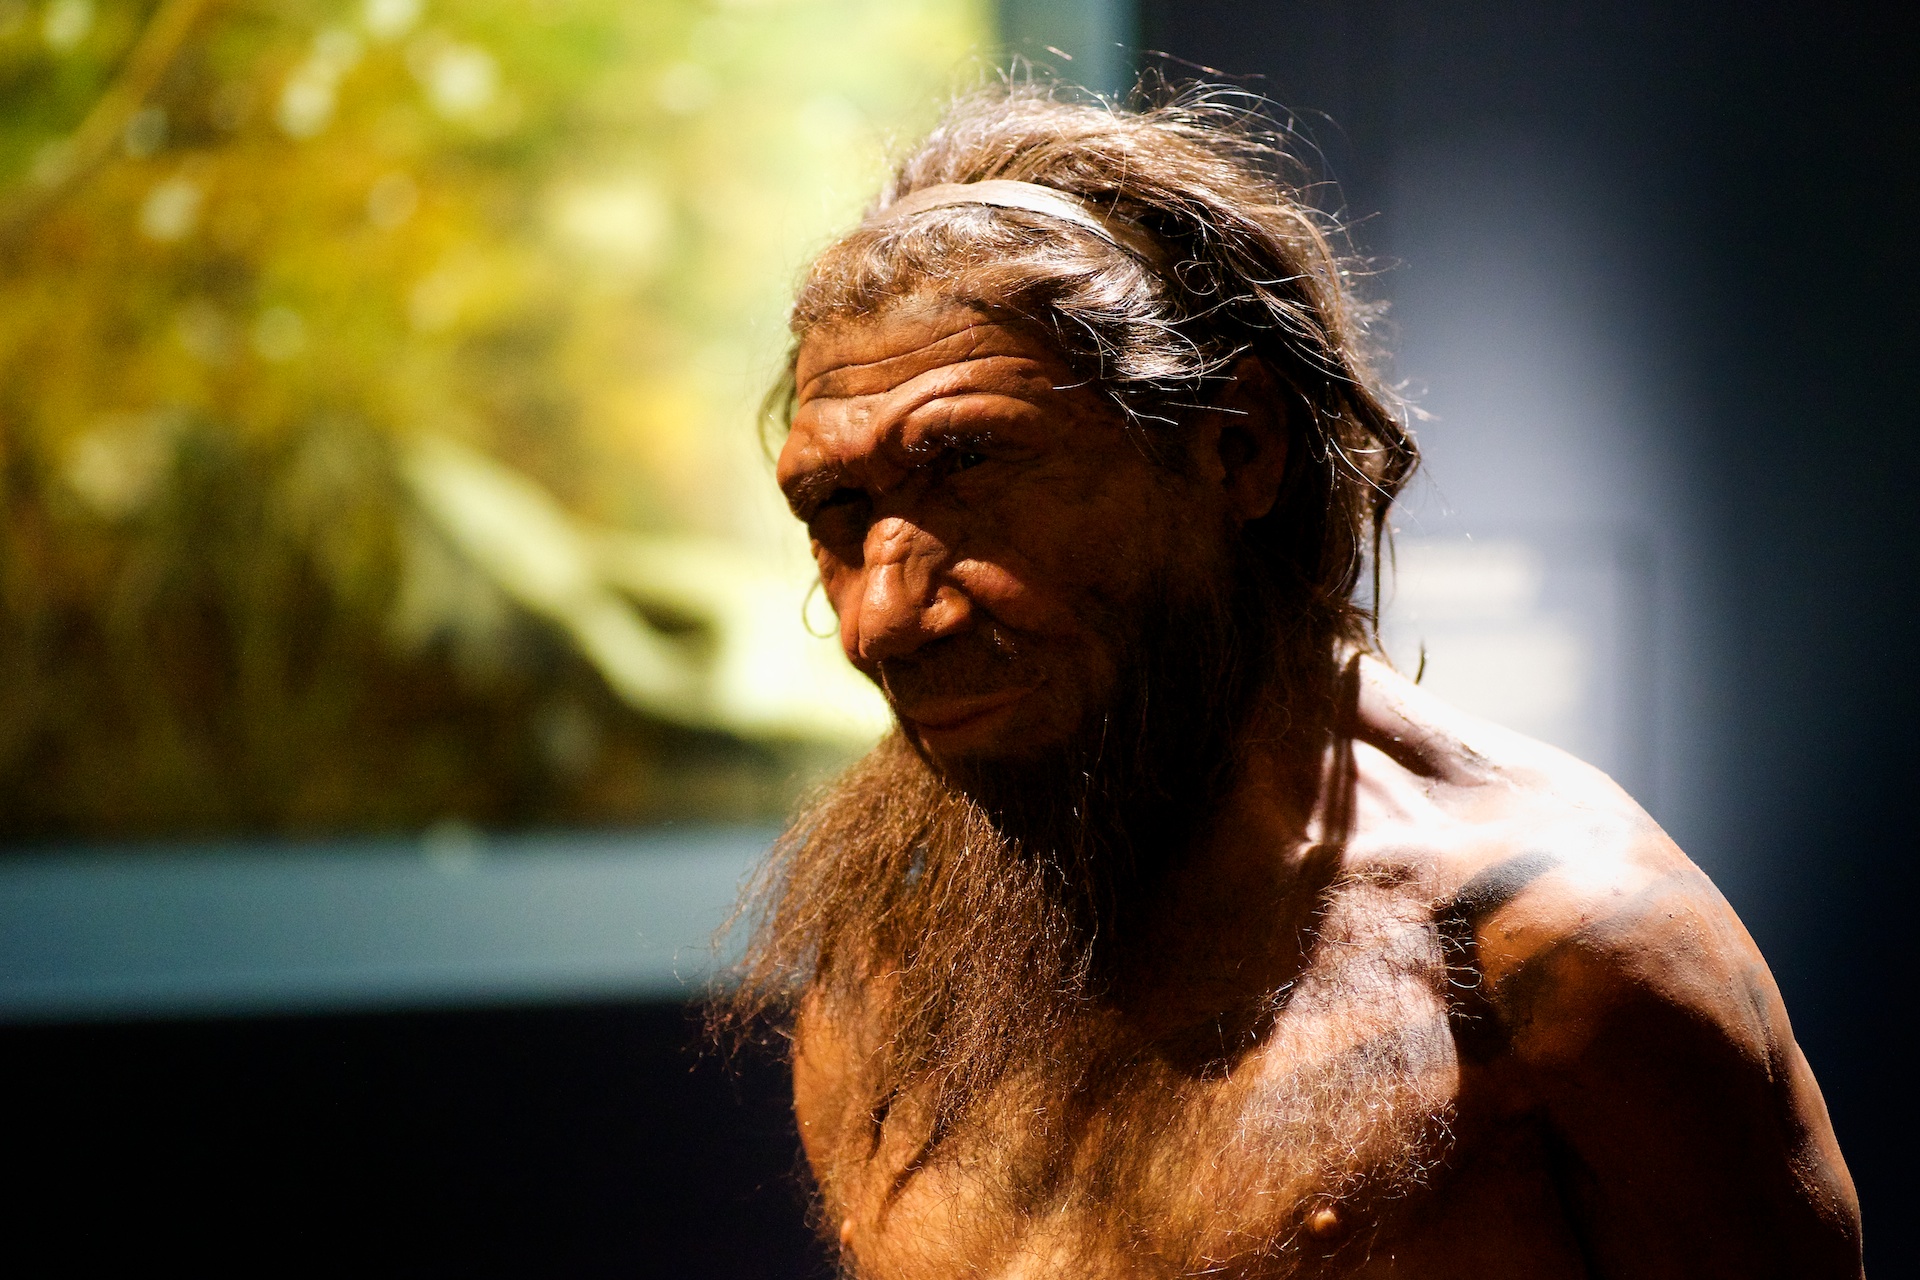 Nuestro "primo" el neandertal, representado en el Museo de Historia Natural de Gran Bretaña. Foto: Paul Hudson / Flickr 